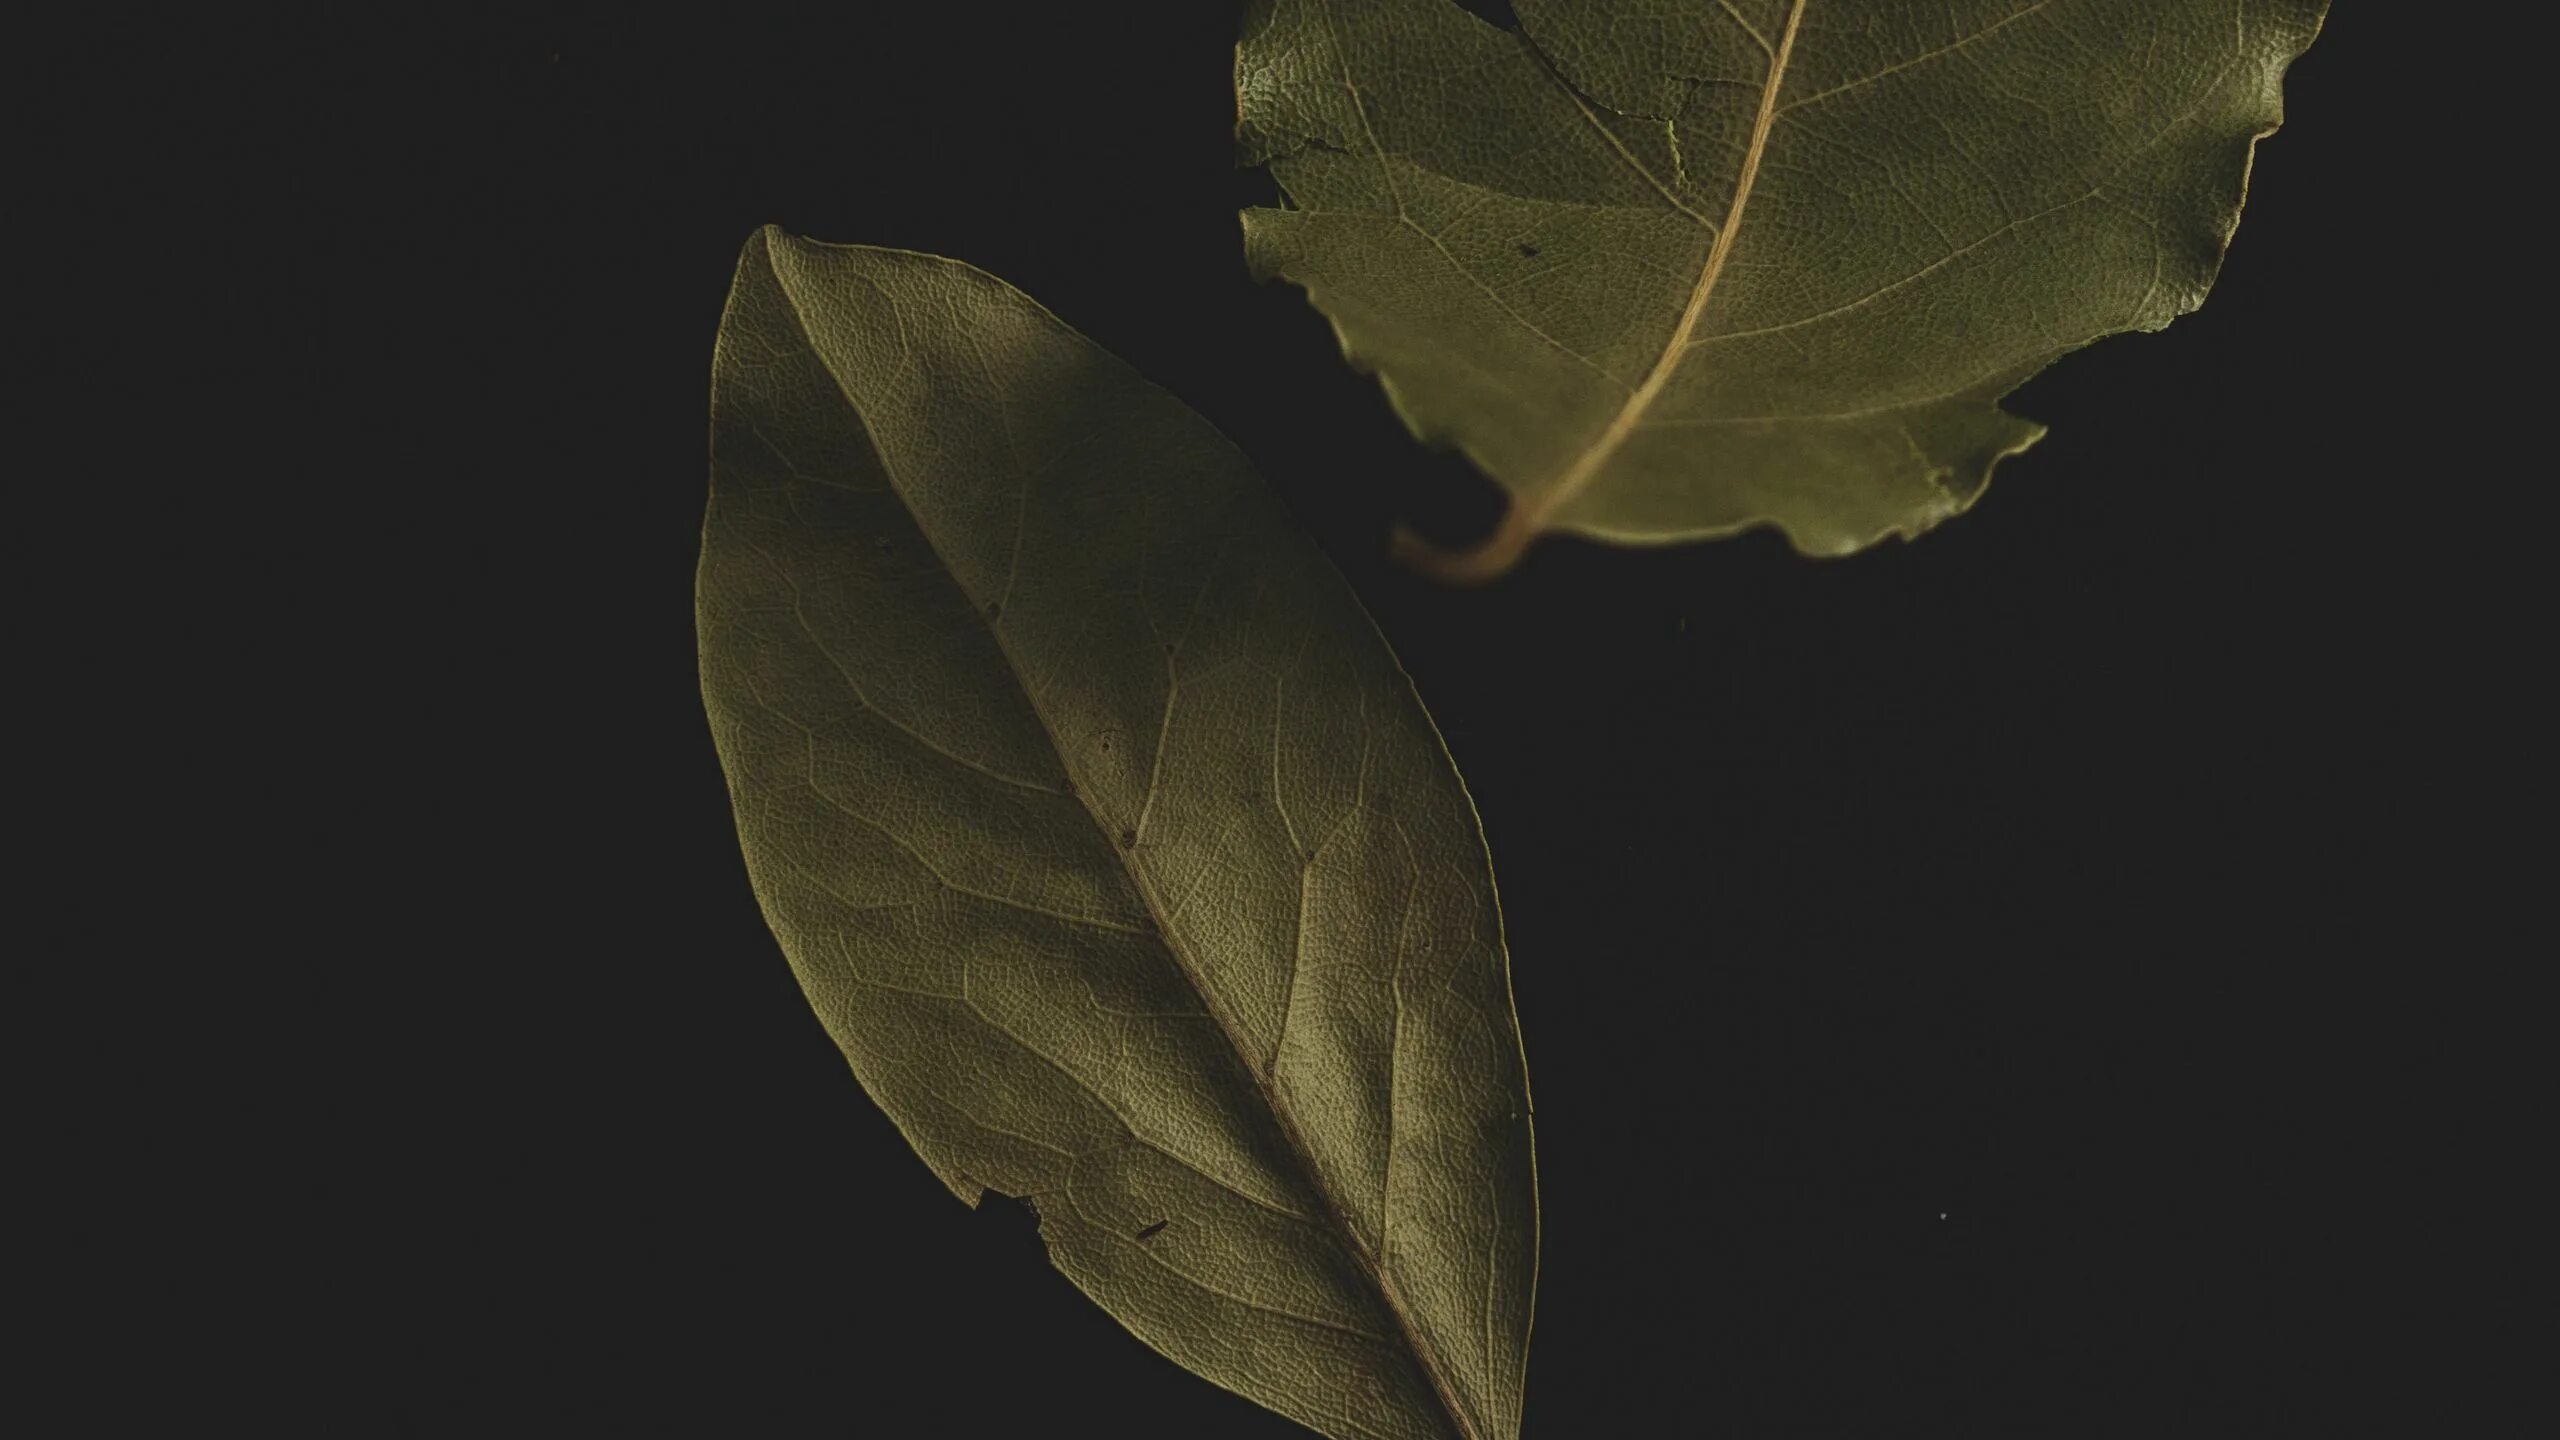 Неприятный лист. Лавровый лист. Листья на черном фоне. Листья на темном фоне. Лист лаврушки.